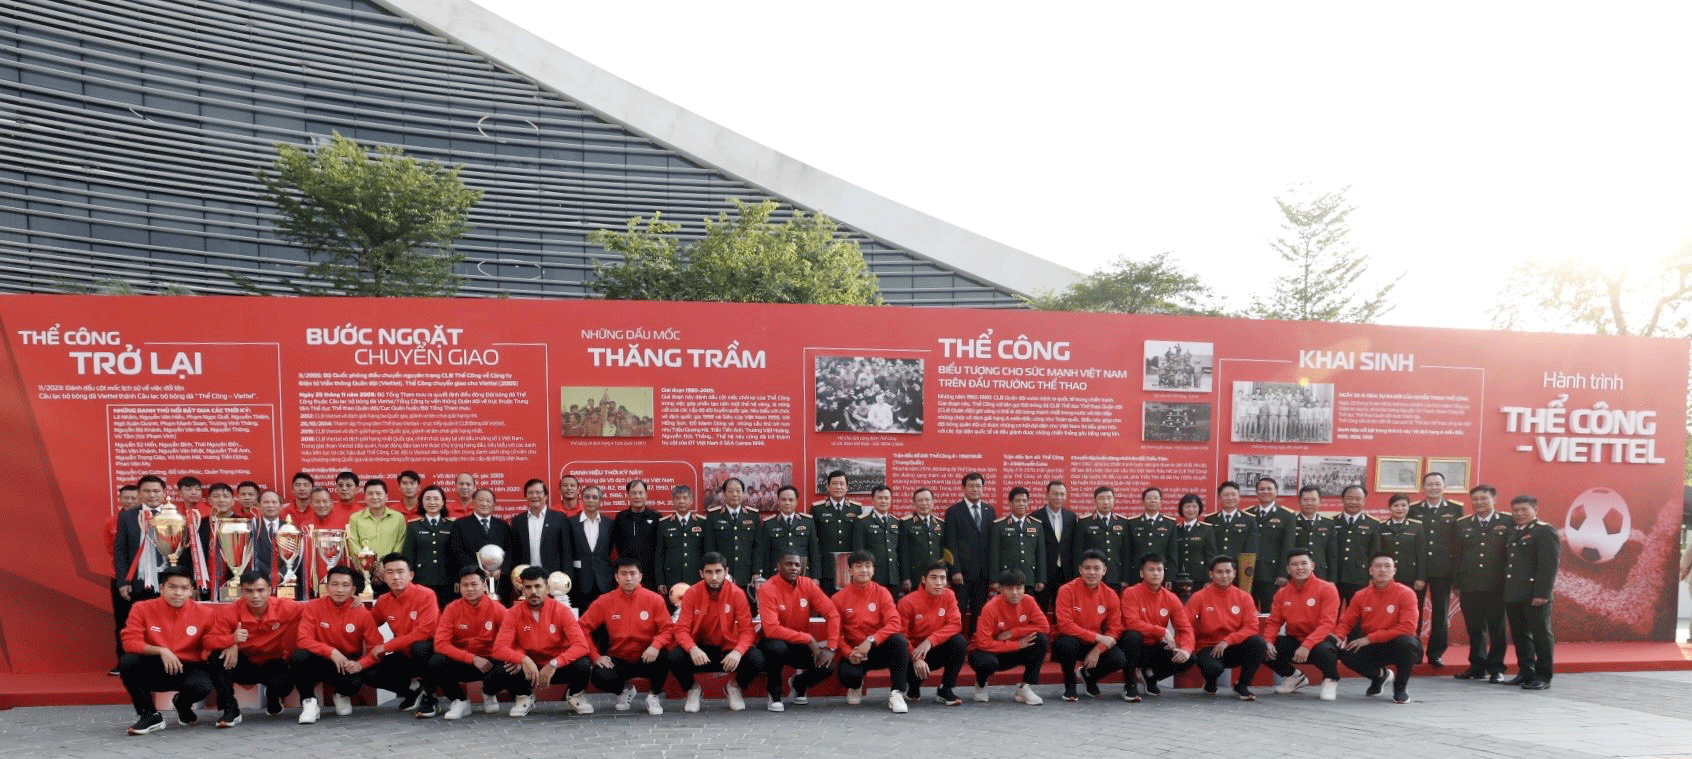 Thương hiệu Thể Công trở lại với bóng đá Việt Nam